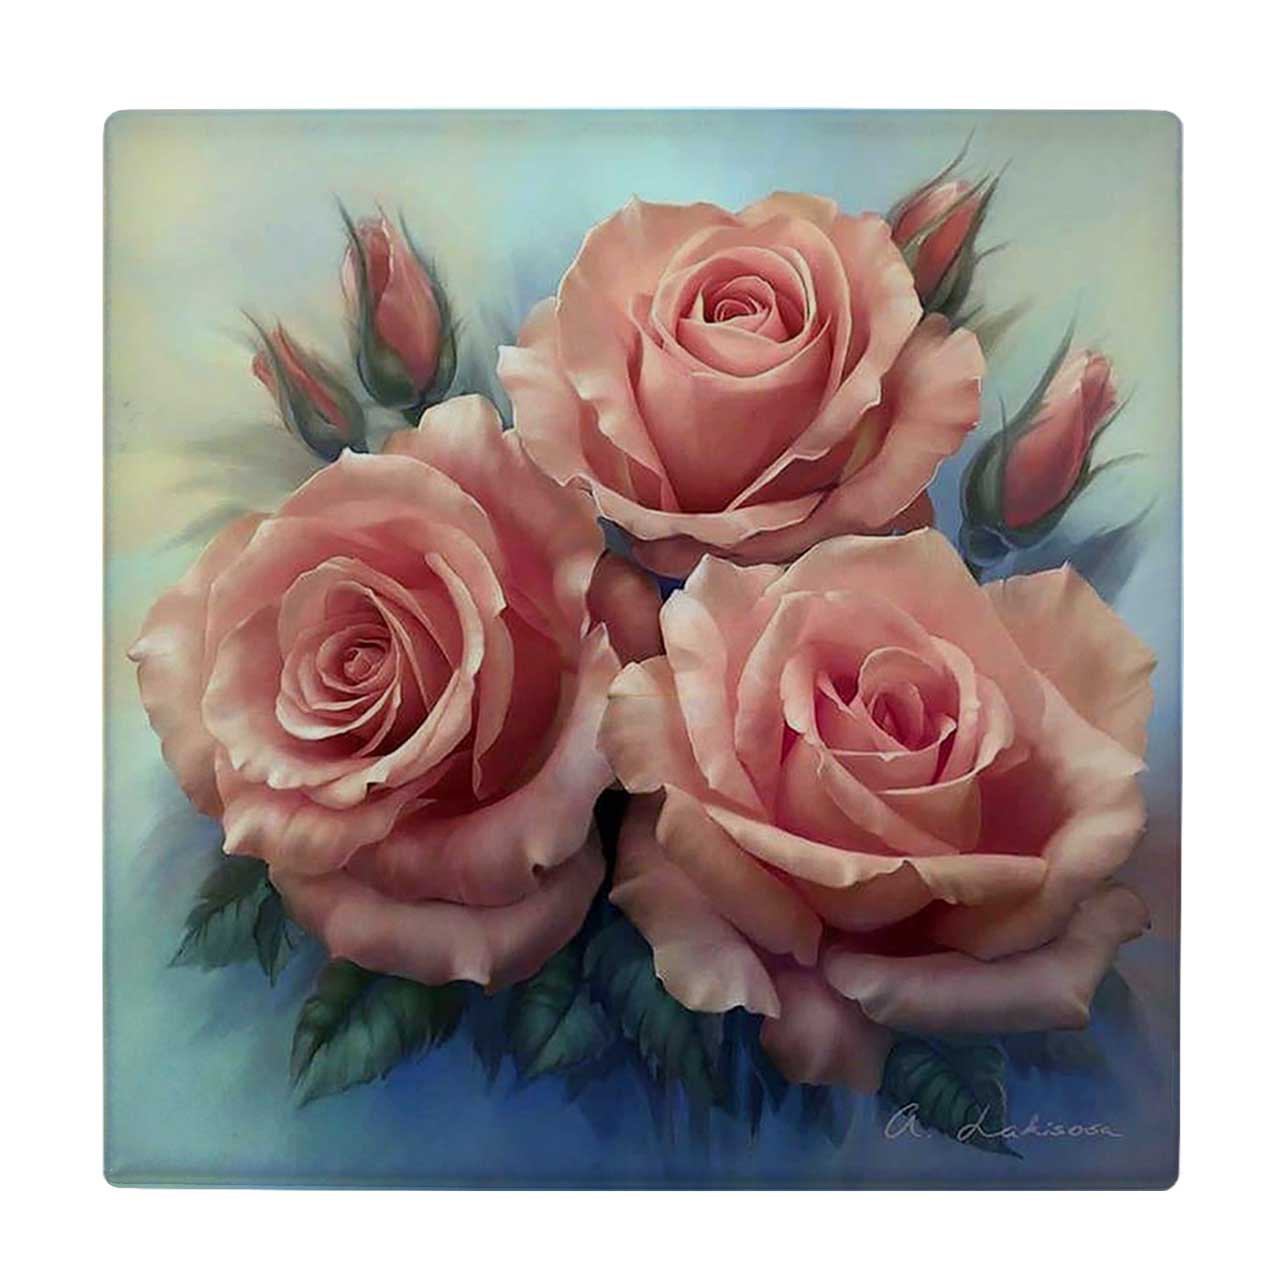  زیر لیوانی طرح نقاشی گل های رز کد 5927738_4655